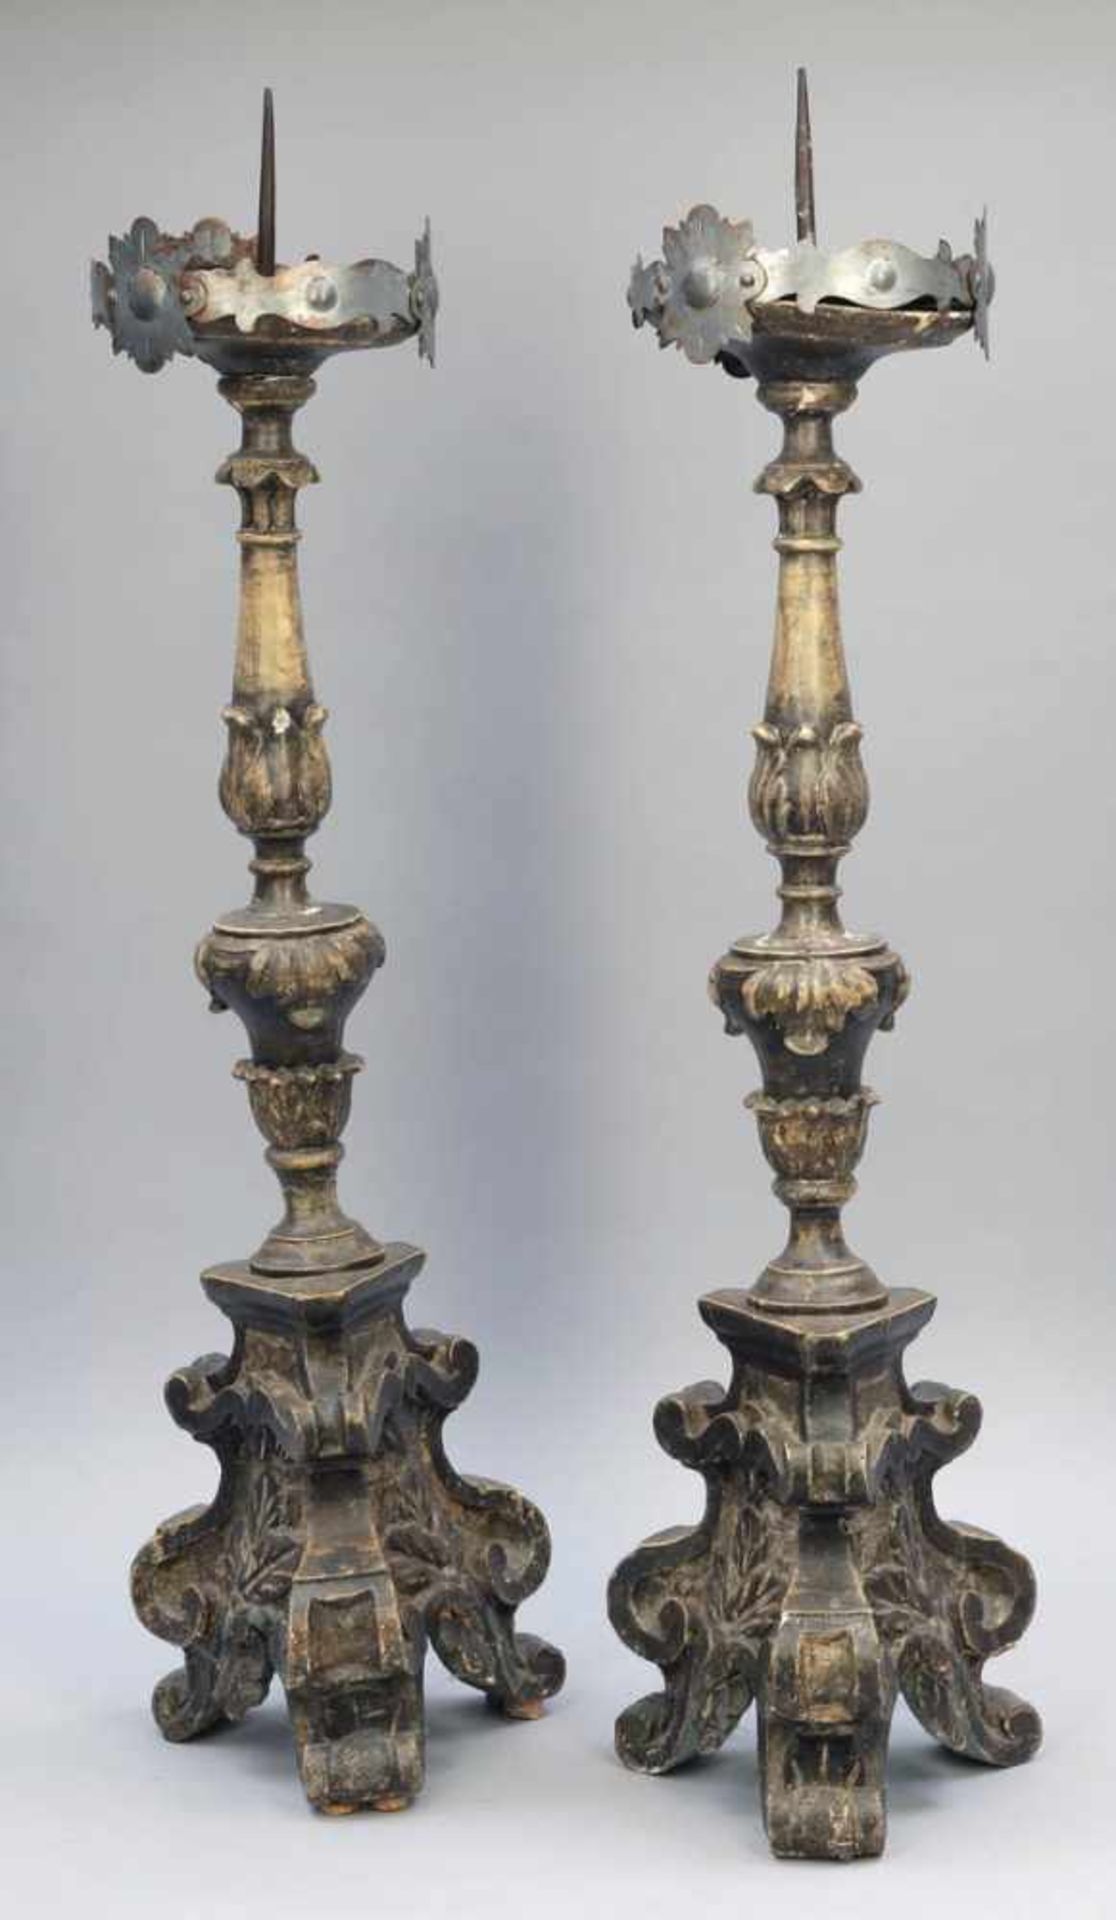 Paar Kirchenleuchter Frankreich, 19. Jh. Holz, gefasst. H. 83 cm. Rest.bed. Auf drei ausgestellten